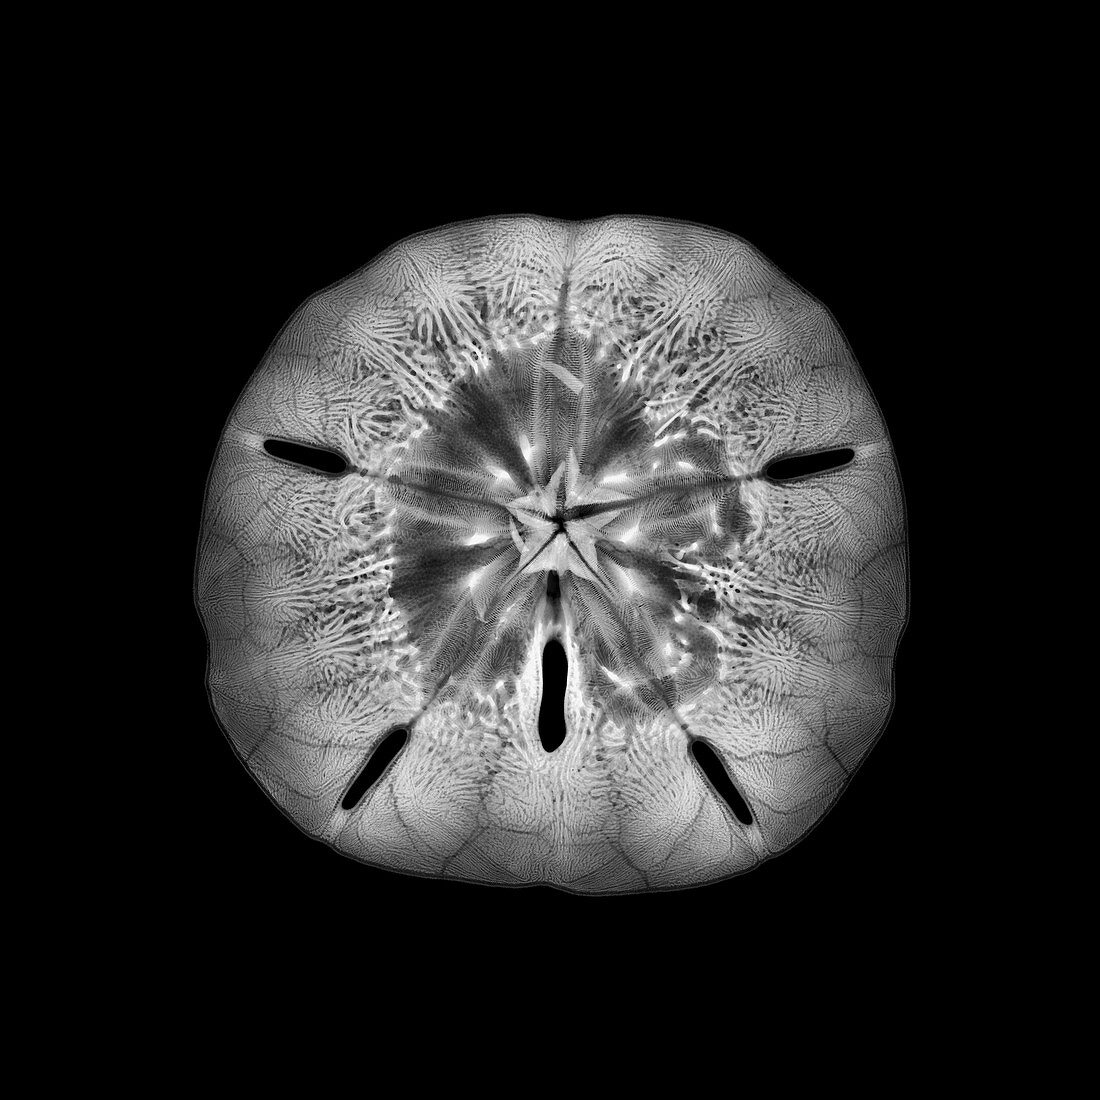 Sand dollar sea urchin, X-ray